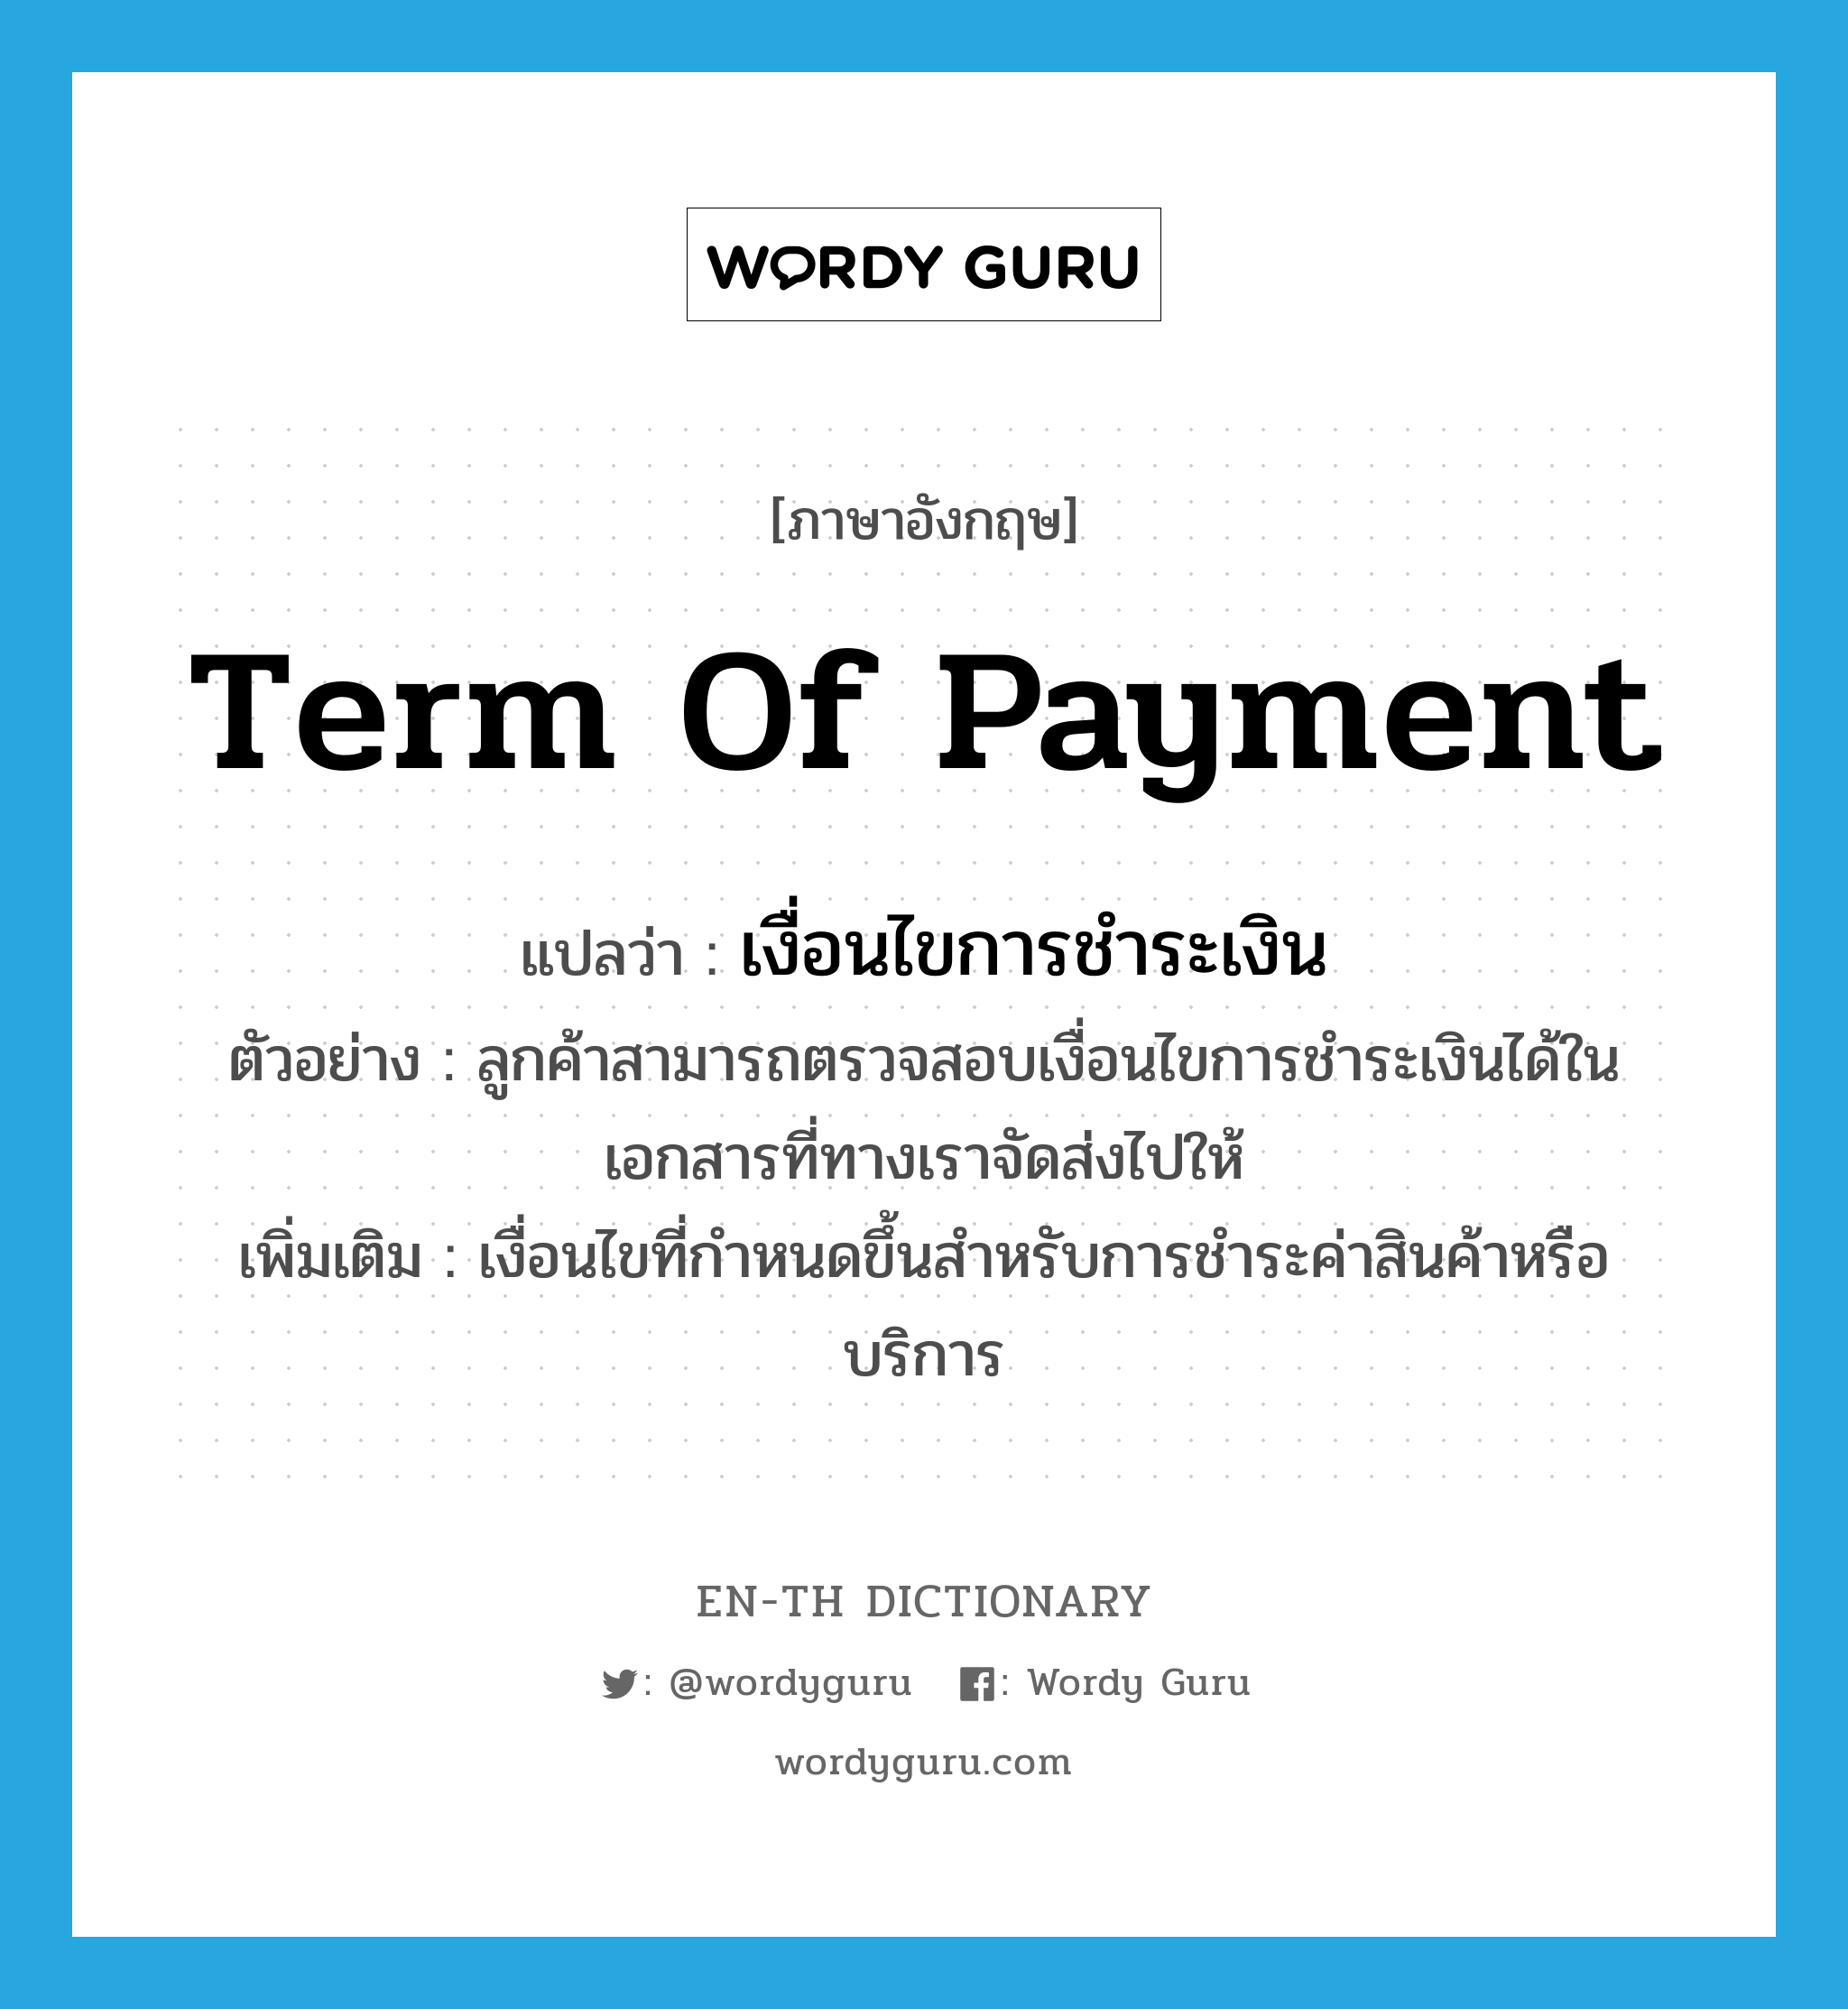 term of payment แปลว่า?, คำศัพท์ภาษาอังกฤษ term of payment แปลว่า เงื่อนไขการชำระเงิน ประเภท N ตัวอย่าง ลูกค้าสามารถตรวจสอบเงื่อนไขการชำระเงินได้ในเอกสารที่ทางเราจัดส่งไปให้ เพิ่มเติม เงื่อนไขที่กำหนดขึ้นสำหรับการชำระค่าสินค้าหรือบริการ หมวด N